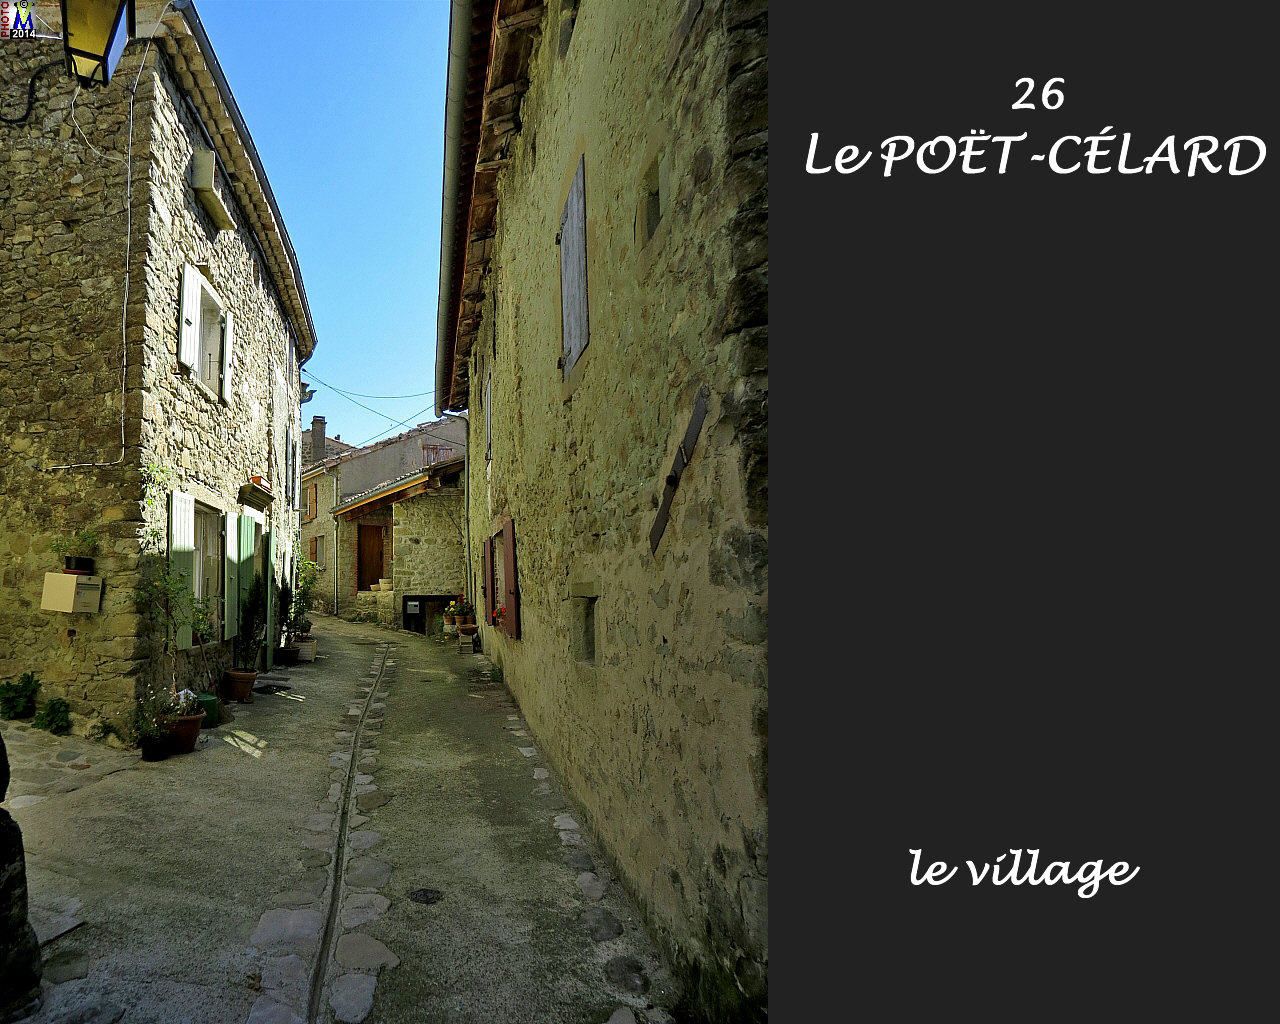 26POET-CELARD_village_106.jpg